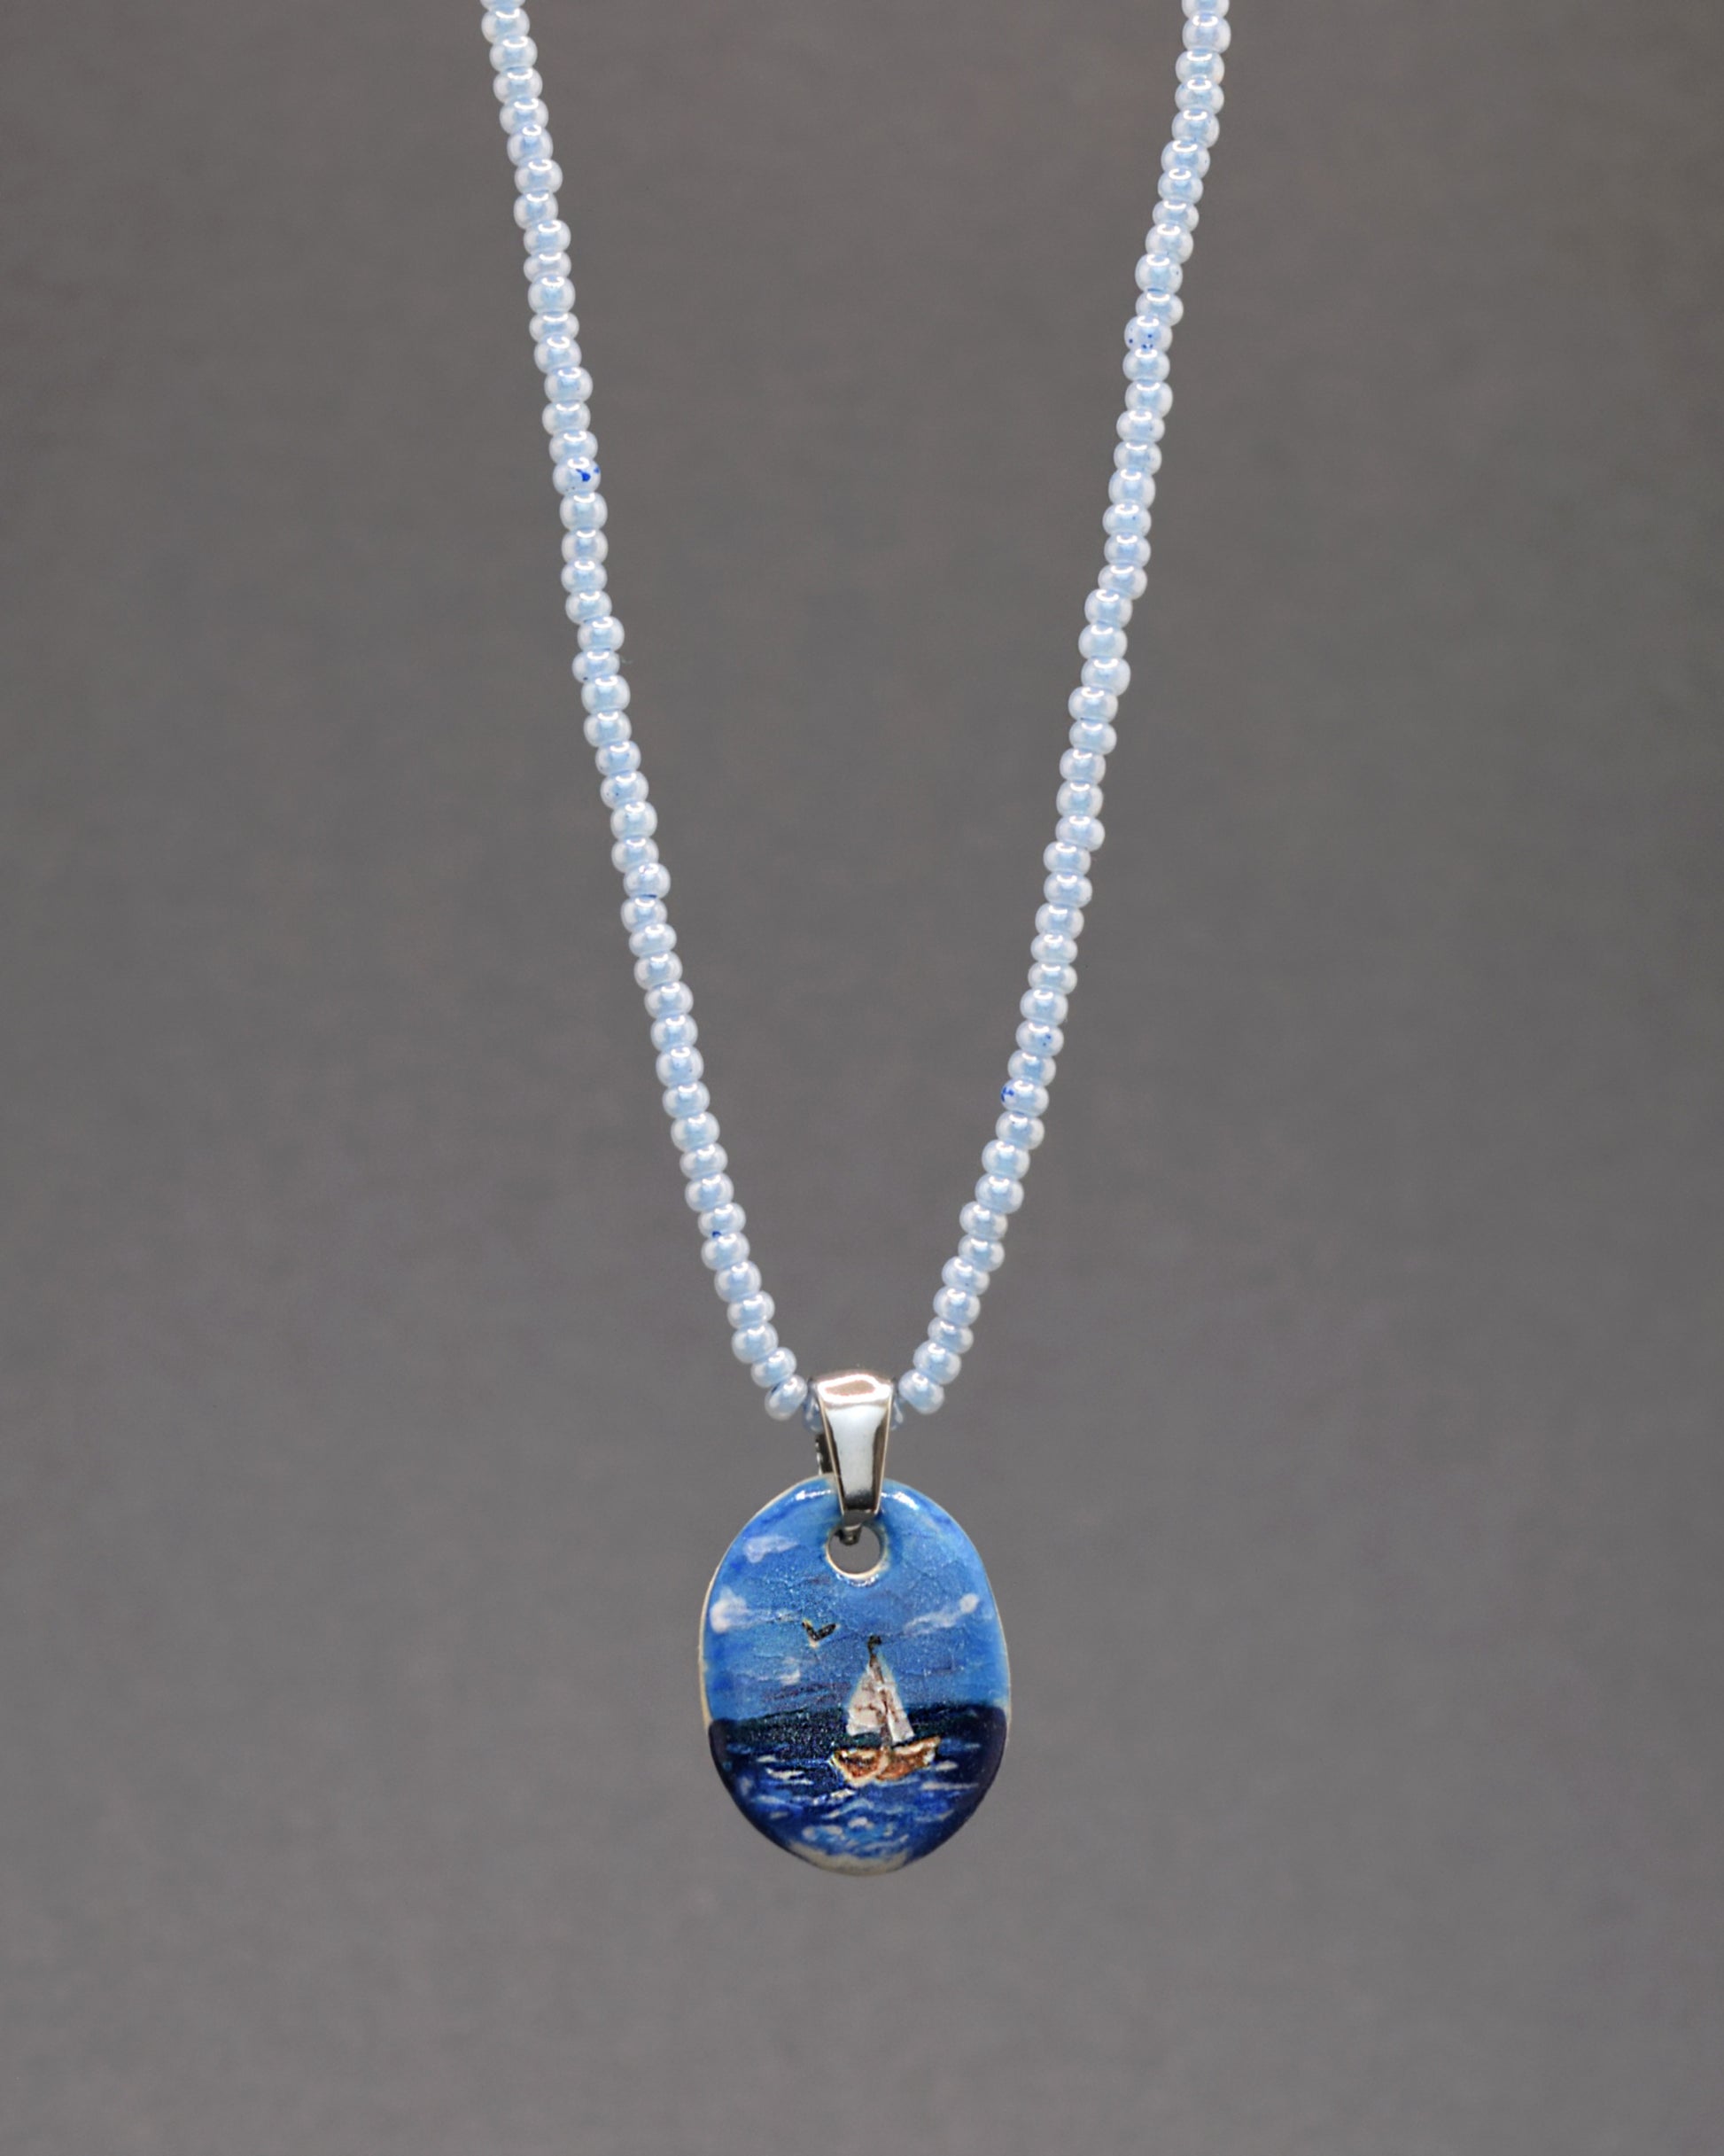 Delicadeza em azul! O nosso colar cativante apresenta um encantador pendente de cerâmica, retratando um Barco em Alto Mar, em perfeita harmonia com uma corrente de missangas de vidro azuis claras. Um toque refrescante e elegante para realçar o seu estilo.